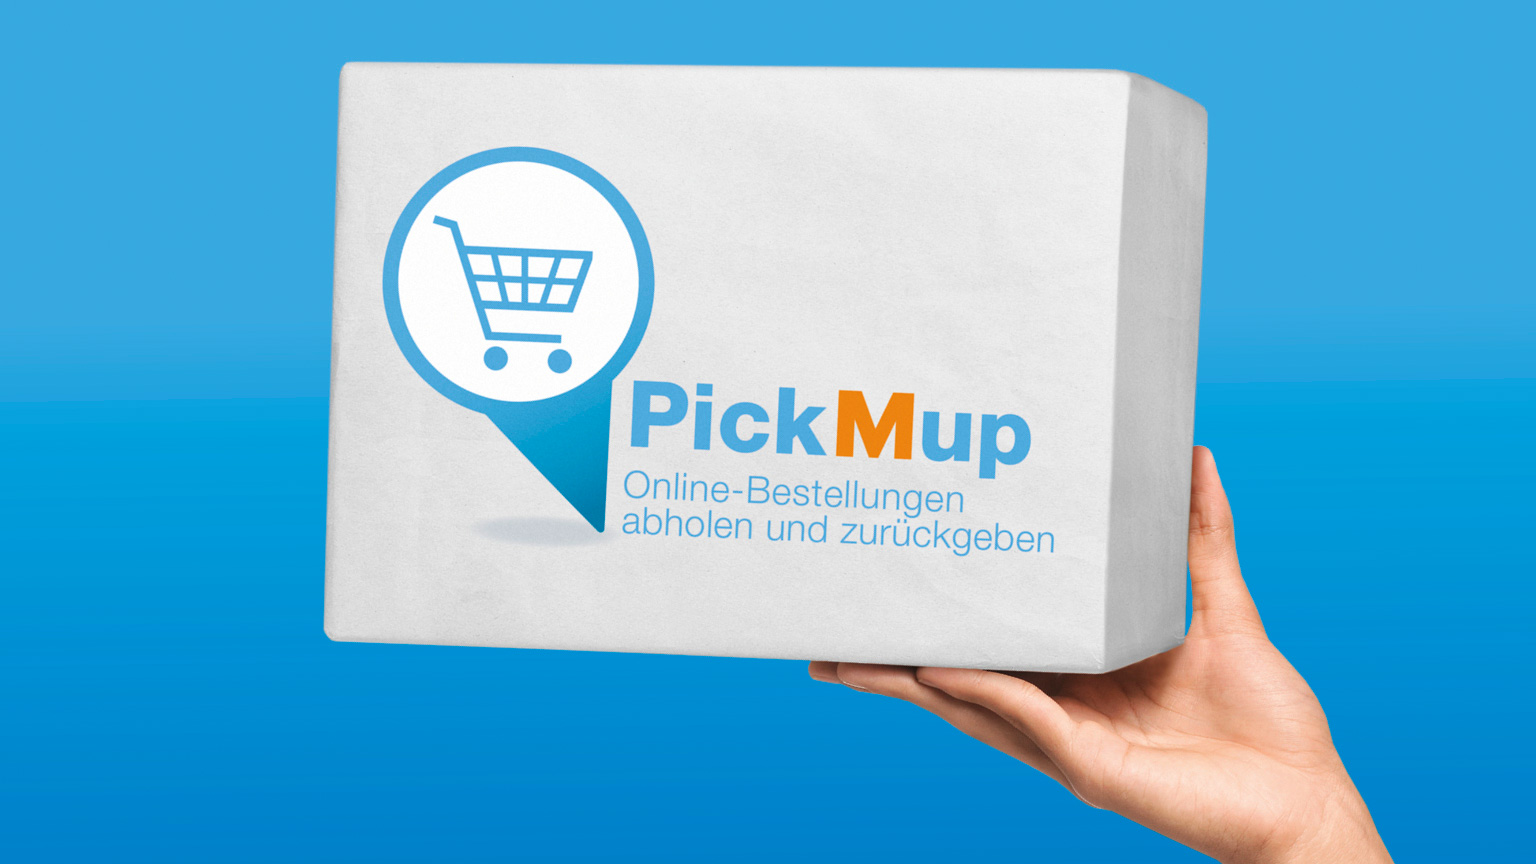 PickMup_Teaser_16x9_de_NEU